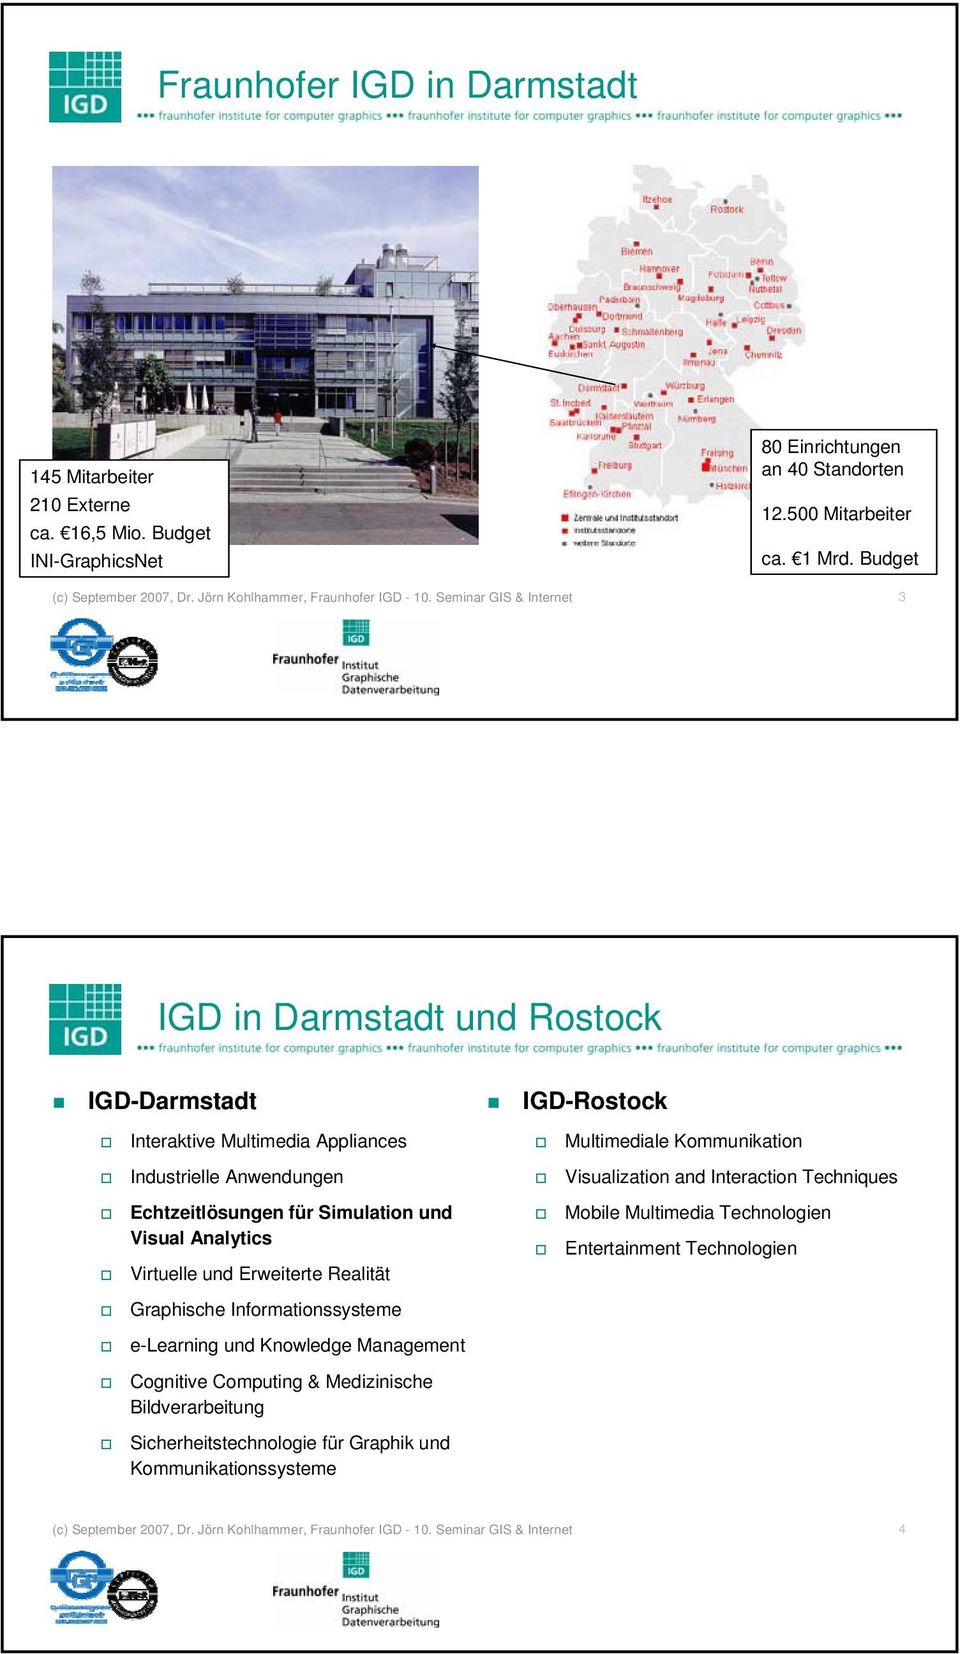 Seminar GIS & Internet 3 IGD in Darmstadt und Rostock IGD-Darmstadt IGD-Rostock Interaktive Multimedia Appliances Multimediale Kommunikation Industrielle Anwendungen Visualization and Interaction